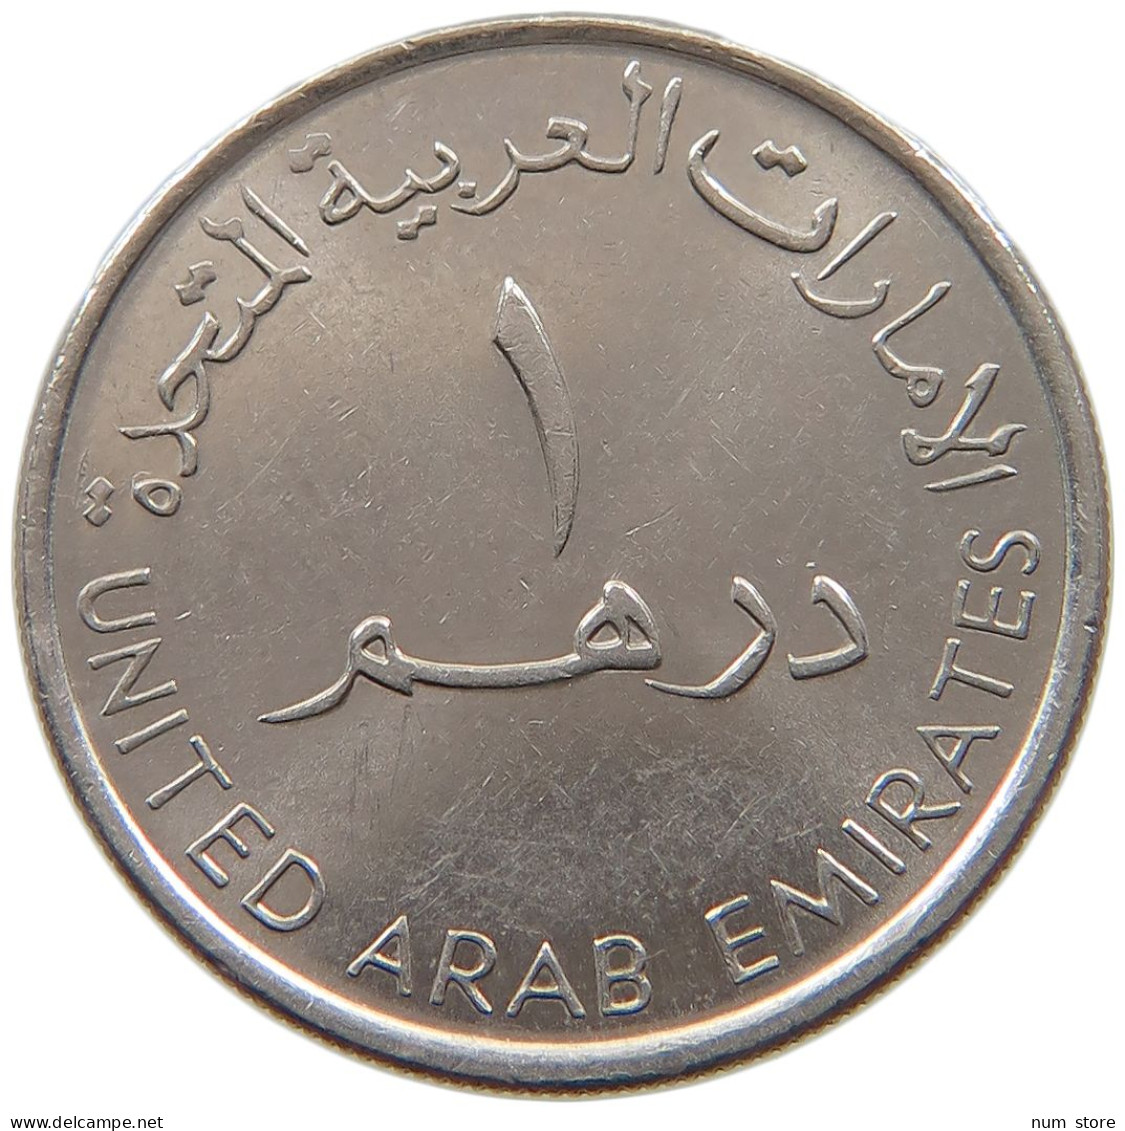 UNITED ARAB EMIRATES DIRHAM 2007  #a037 0245 - Ver. Arab. Emirate